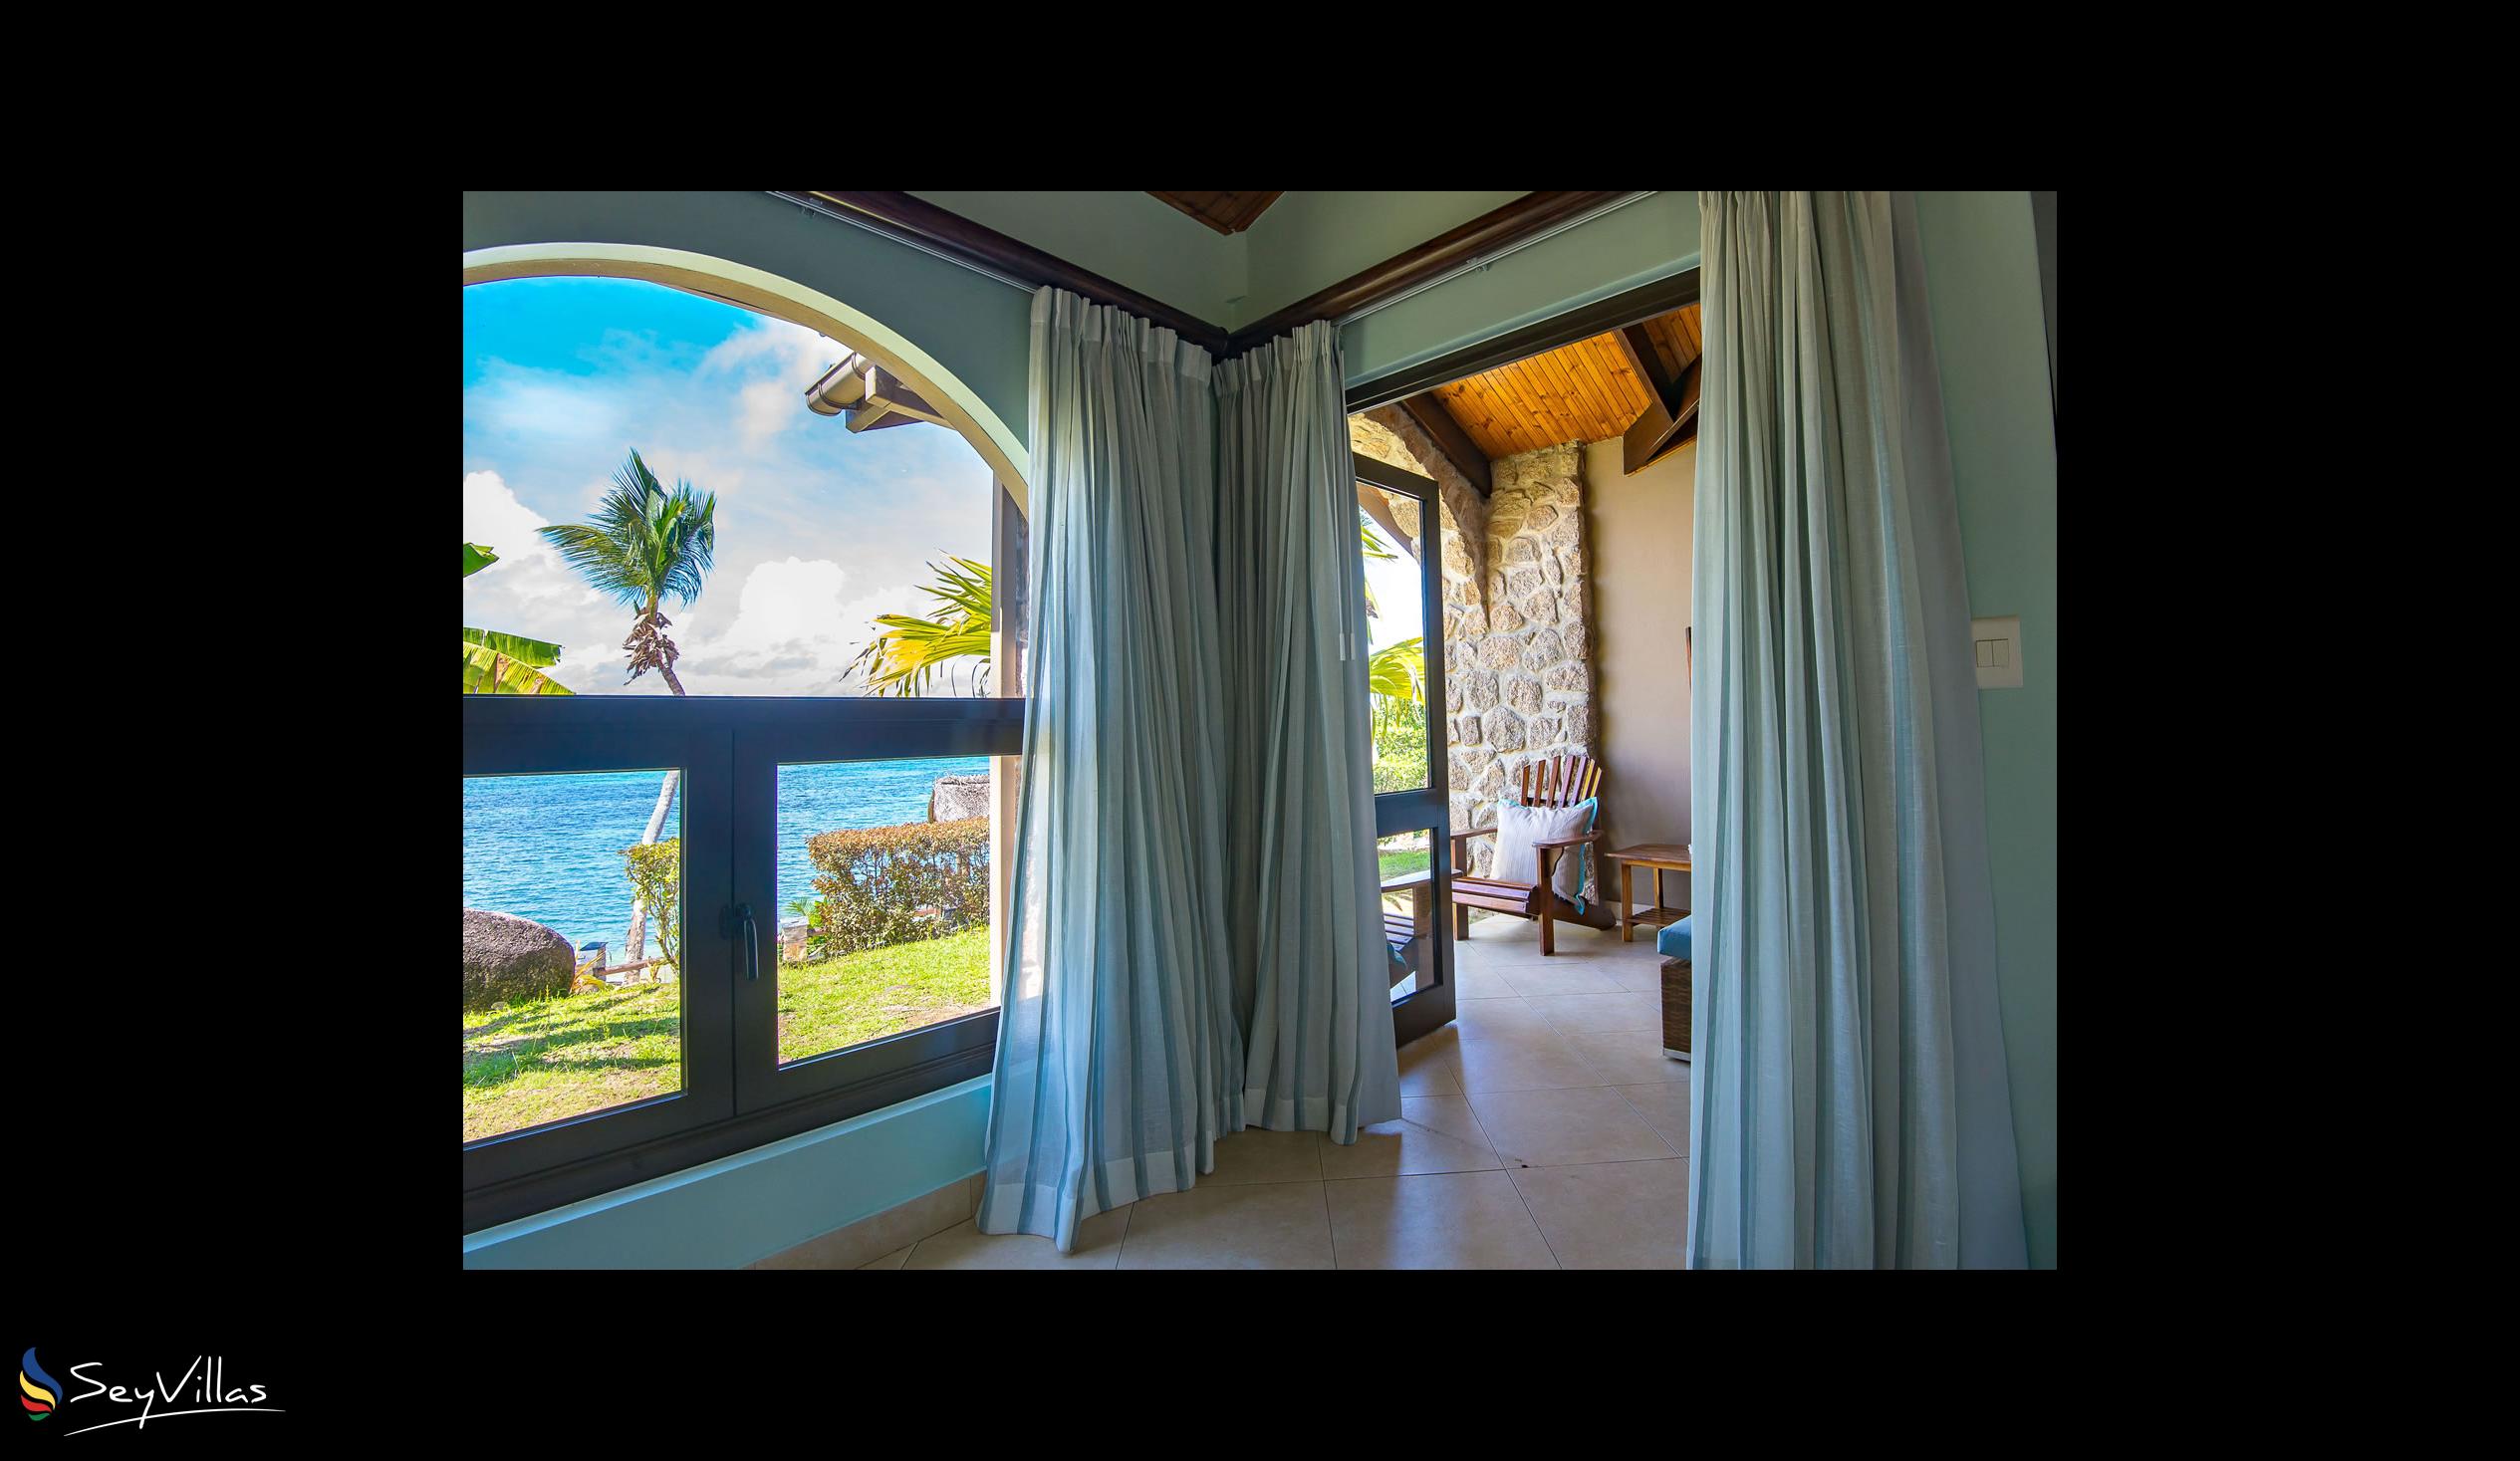 Foto 56: Coco de Mer & Black Parrot Suites - Standard - Praslin (Seychellen)